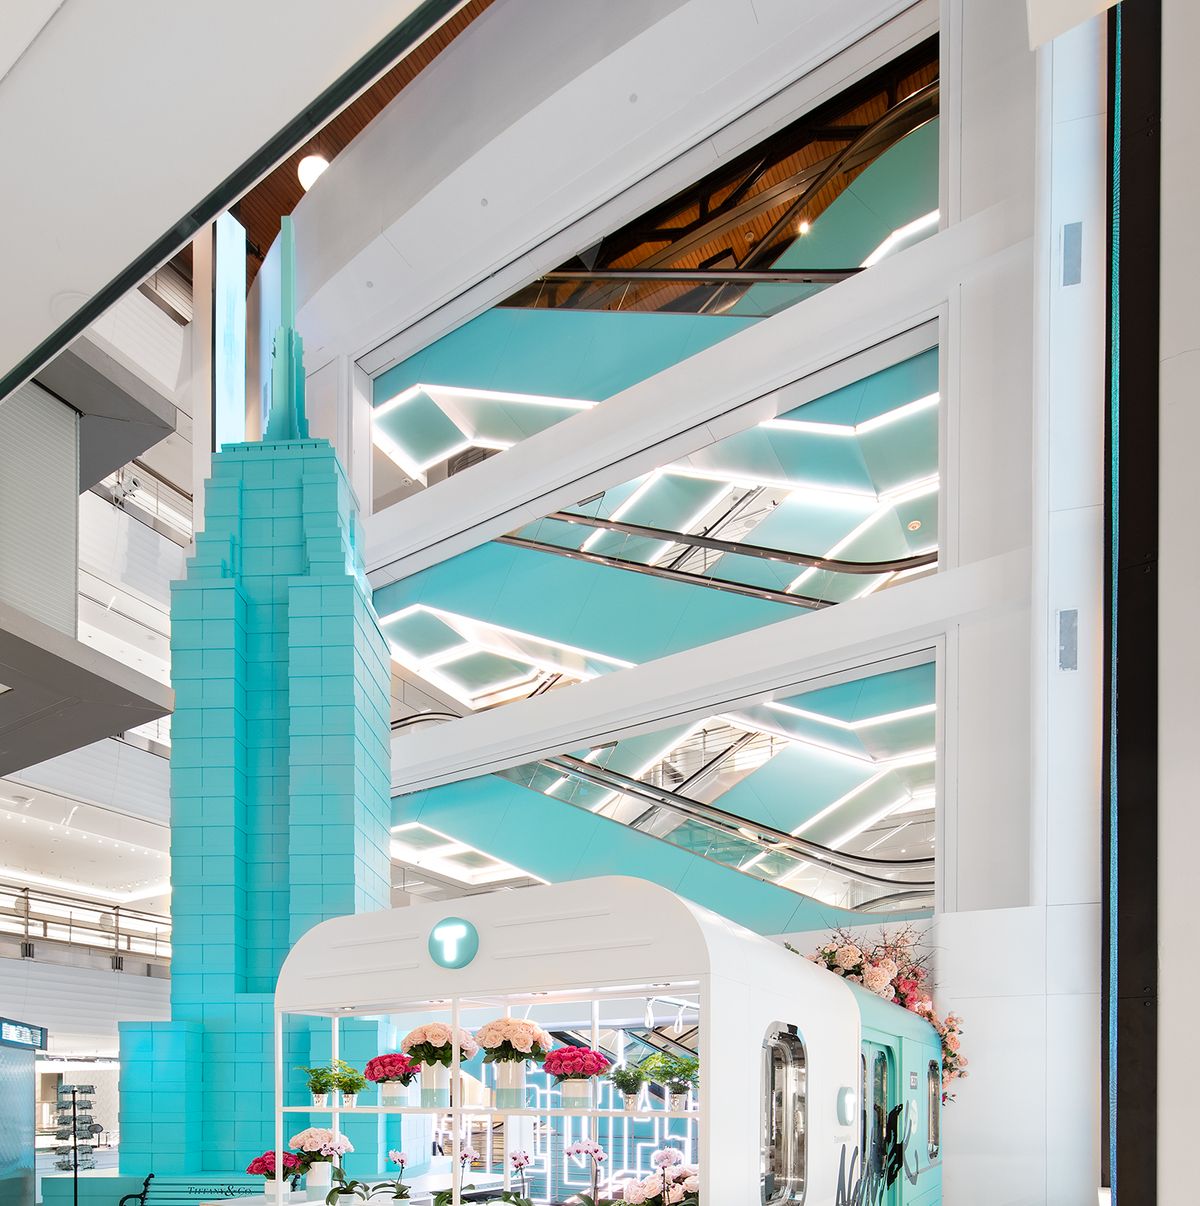 Tiffany & Co. store in Miami, Florida